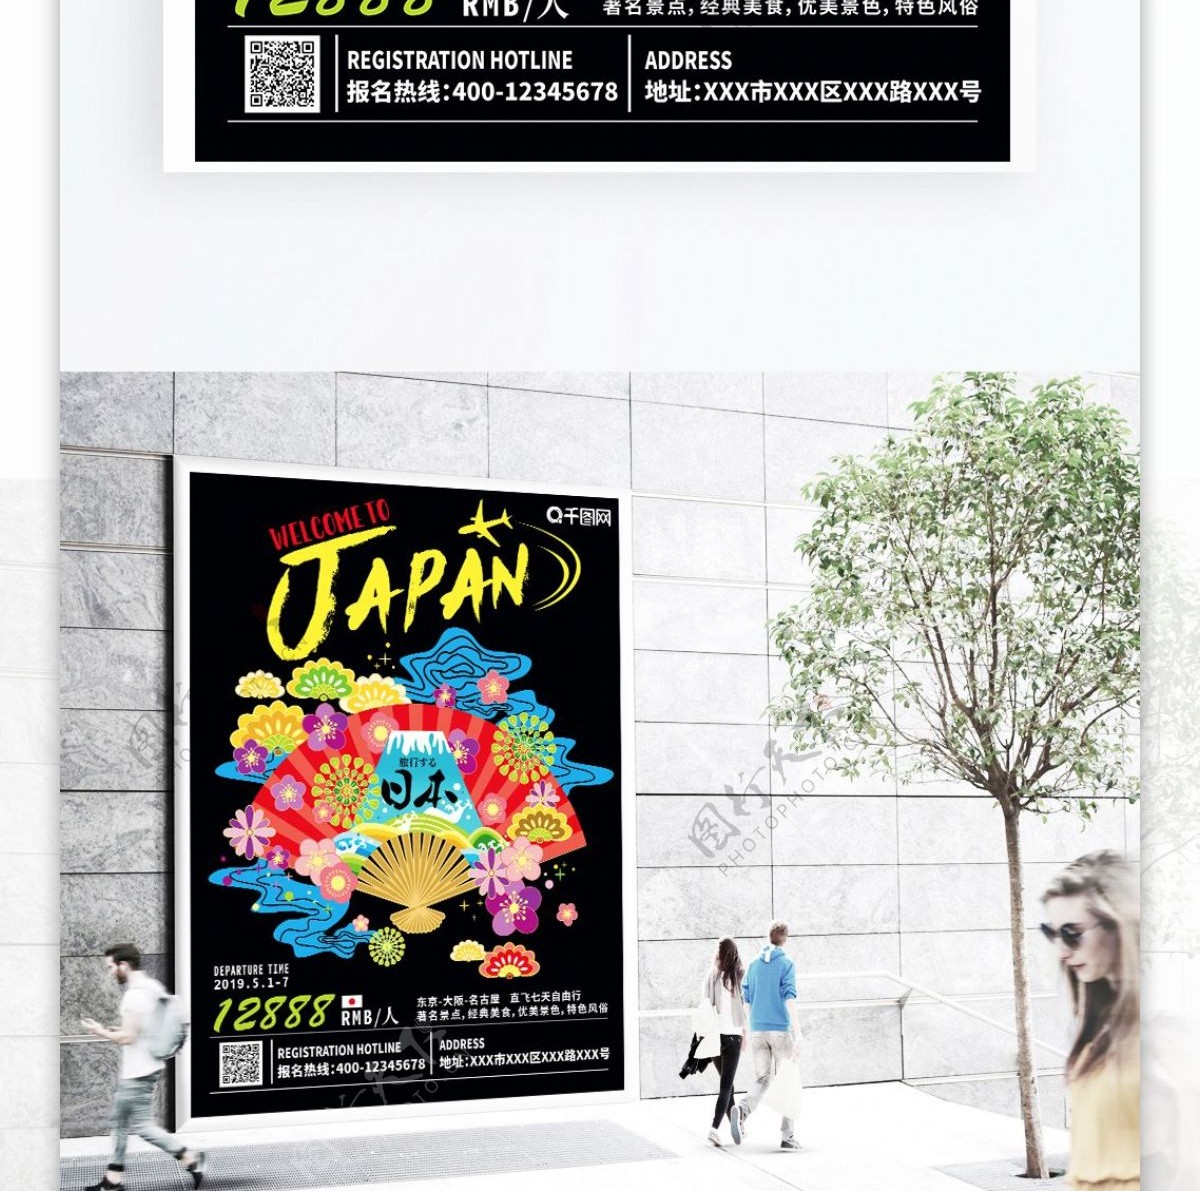 黑色手绘日本旅游海报